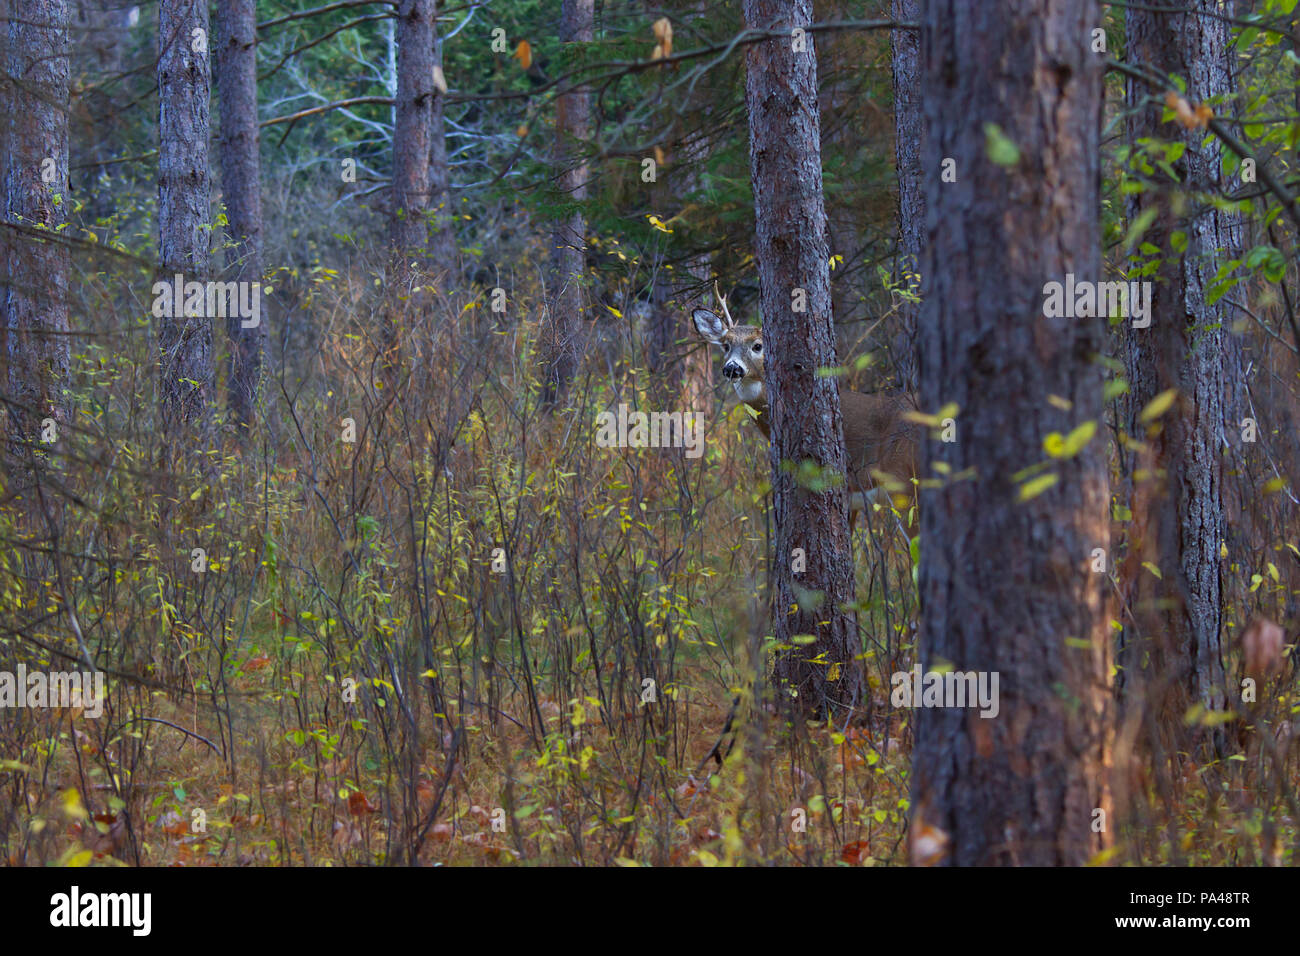 White-tailed deer buck à la recherche d'un partenaire au cours de l'ornière dans la lumière de l'automne tôt le matin au Canada Banque D'Images